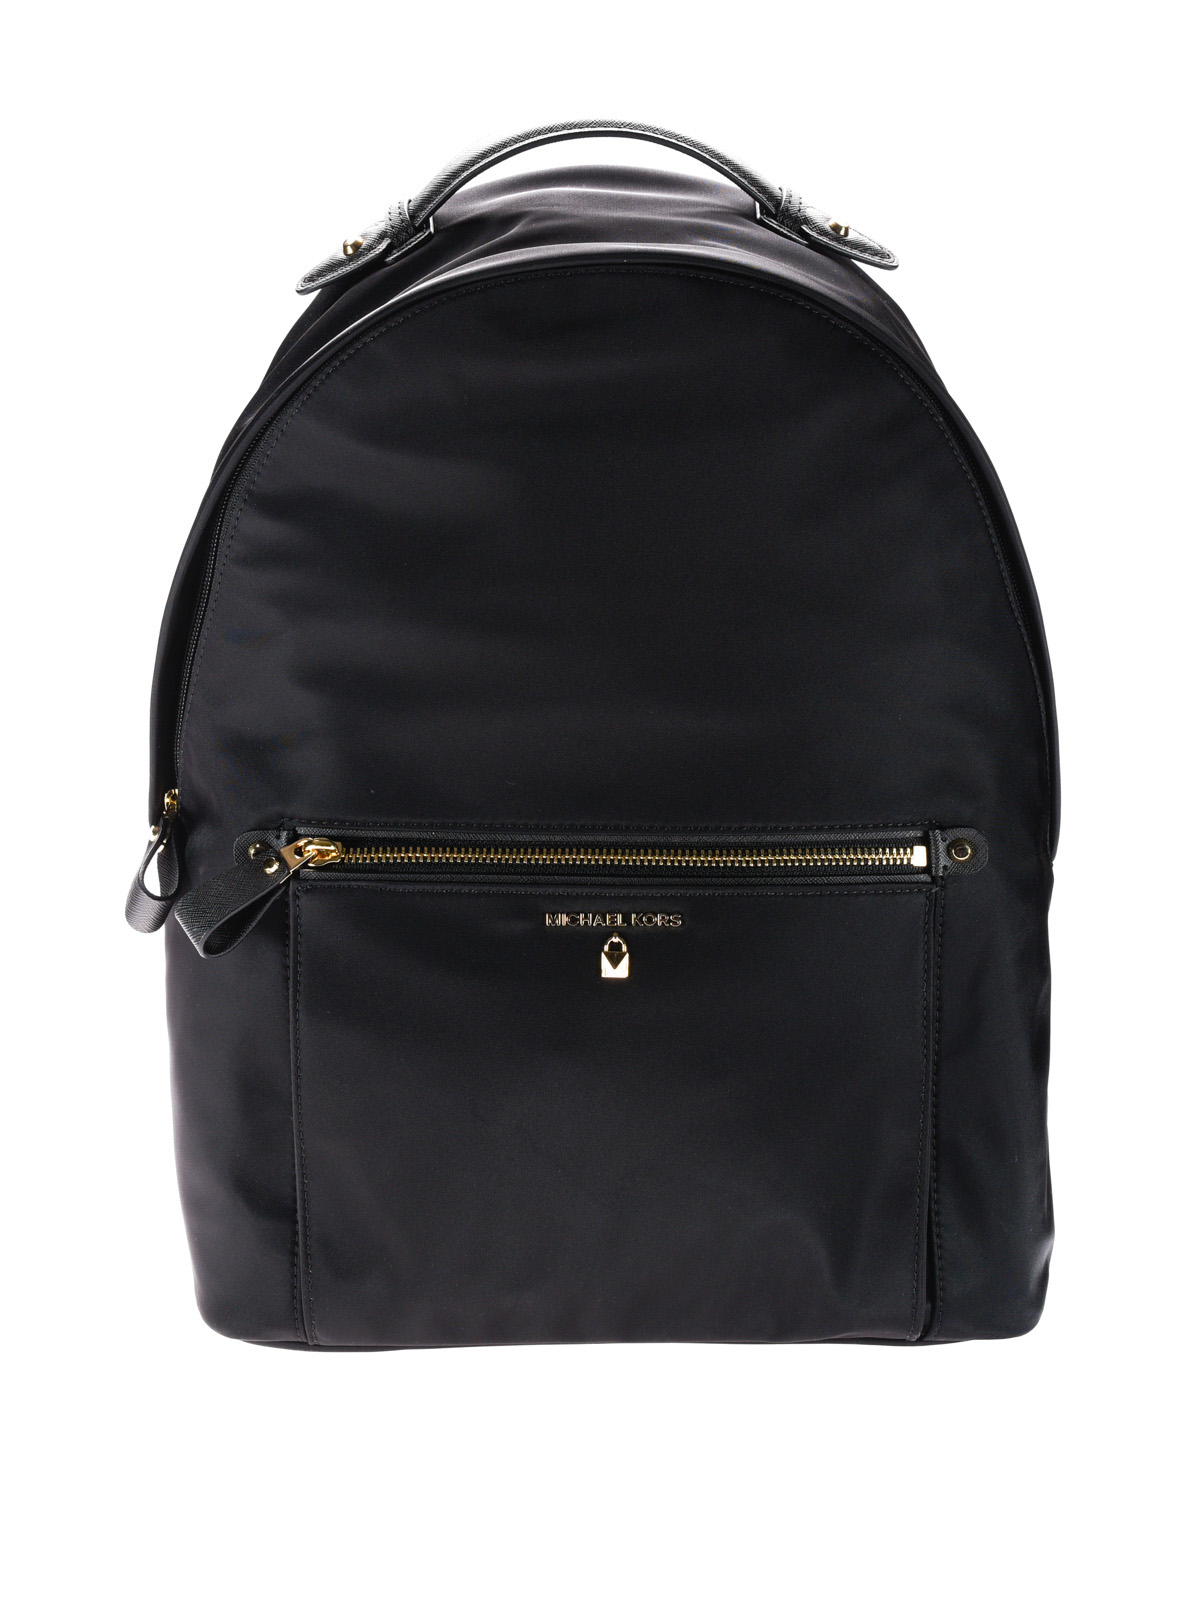 Michael Kors - Kelsey black nylon backpack - backpacks - 30F7GO2B7C001